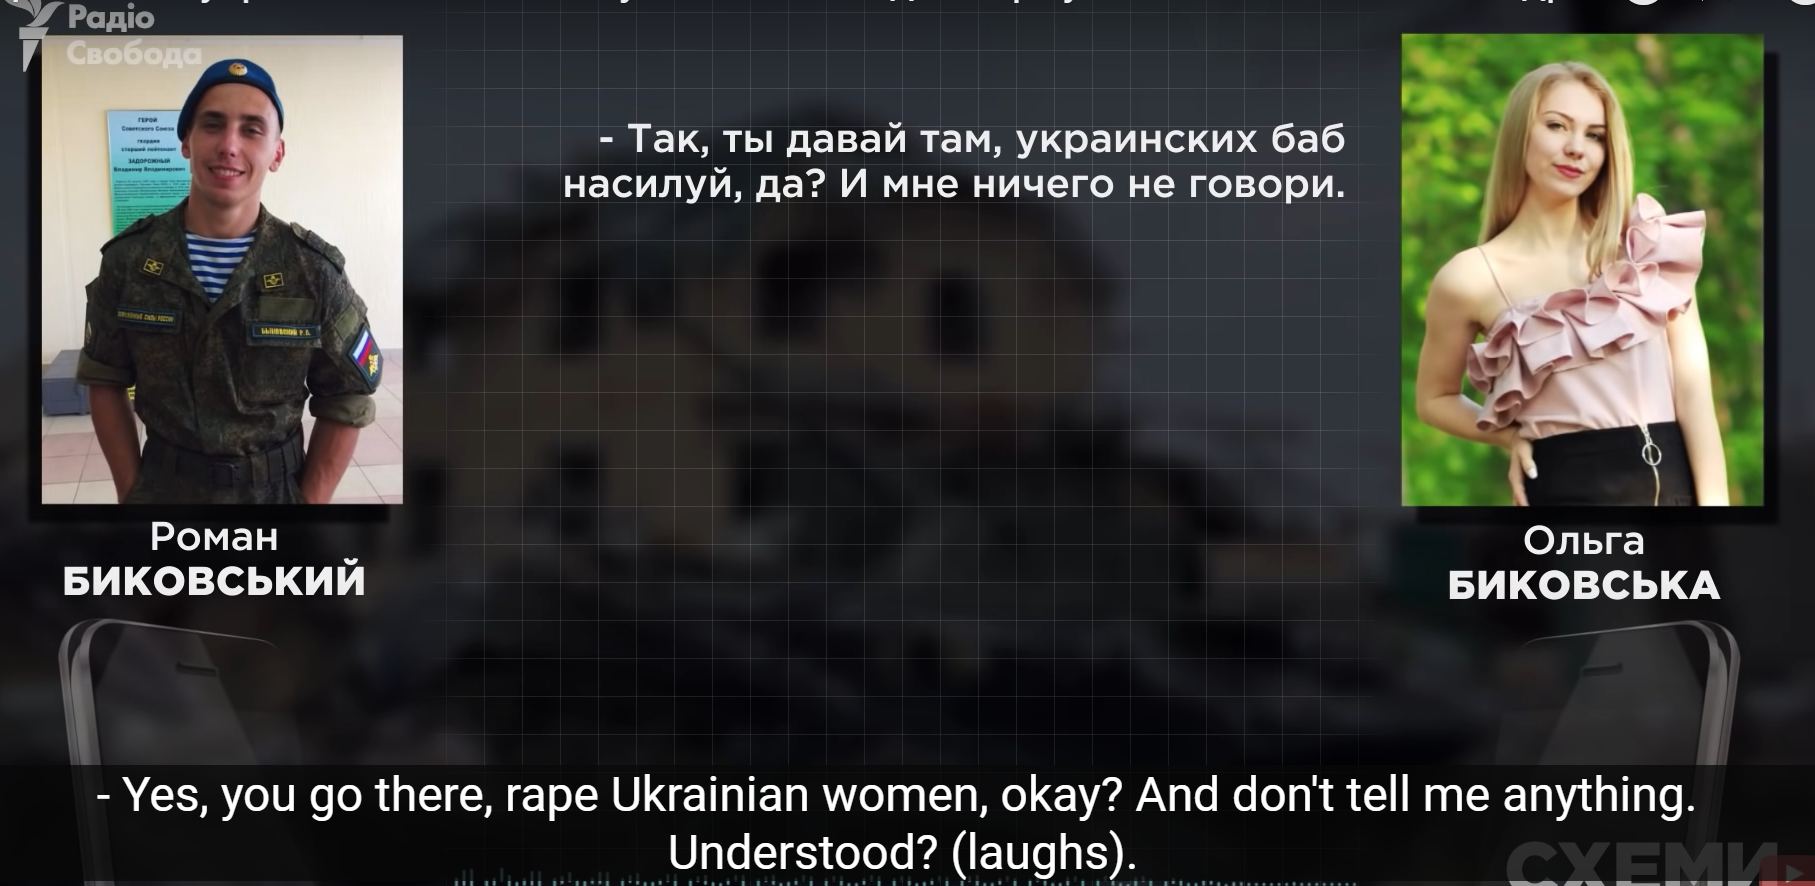 Megengedem, hogy erőszakold az ukrán nőket, csak használj óvszert - egy orosz katonát biztatja a párja, hogy tanítsa móresre a leigázottakat (HANGFELVÉTEL)